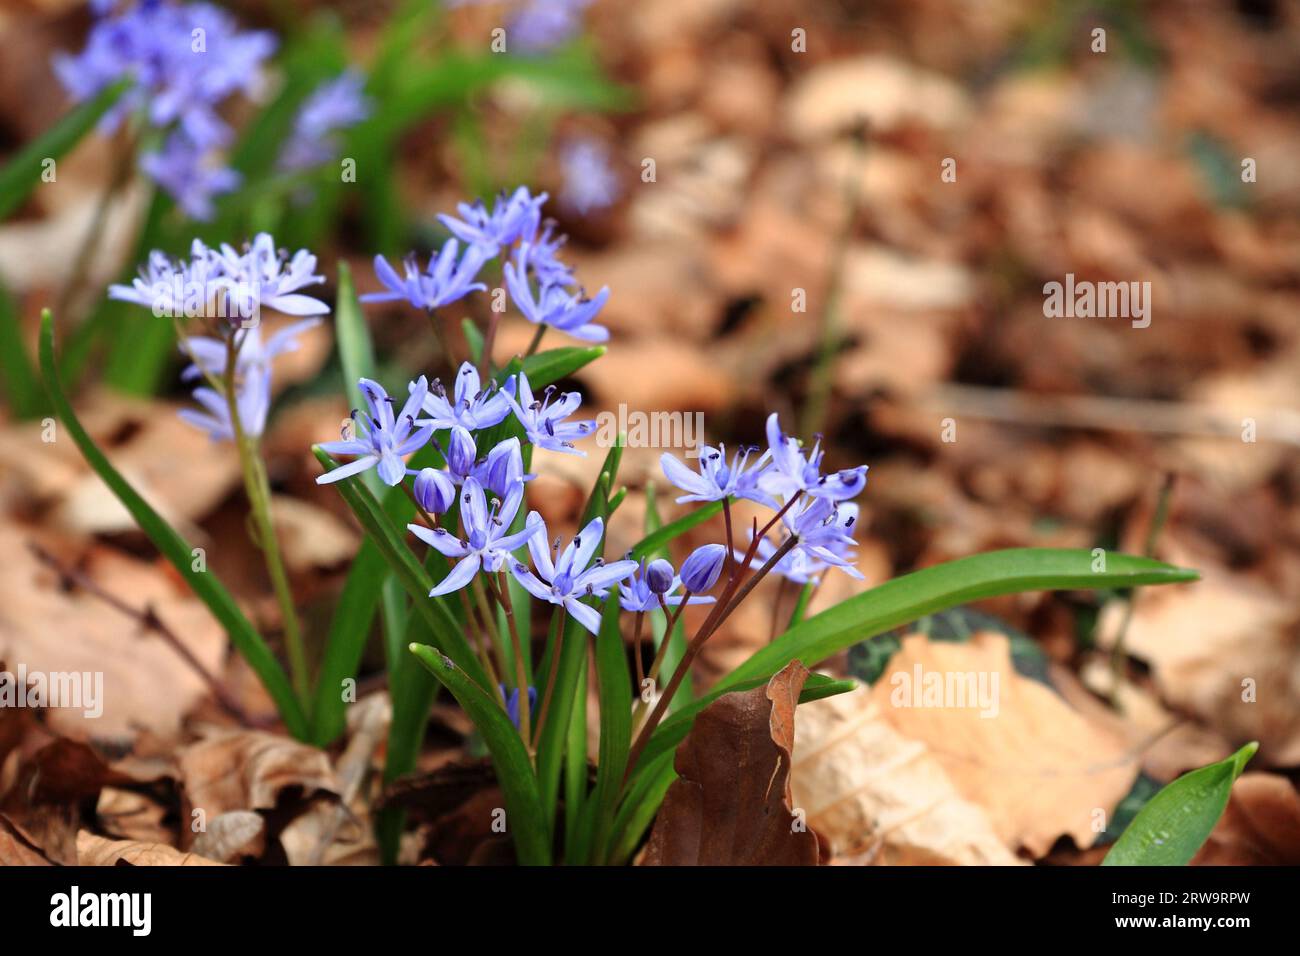 Blau-lila blühende Waldhyazinthen, Hintergrundlaub, aufgenommen mit der Tiefe des Feldes Stockfoto